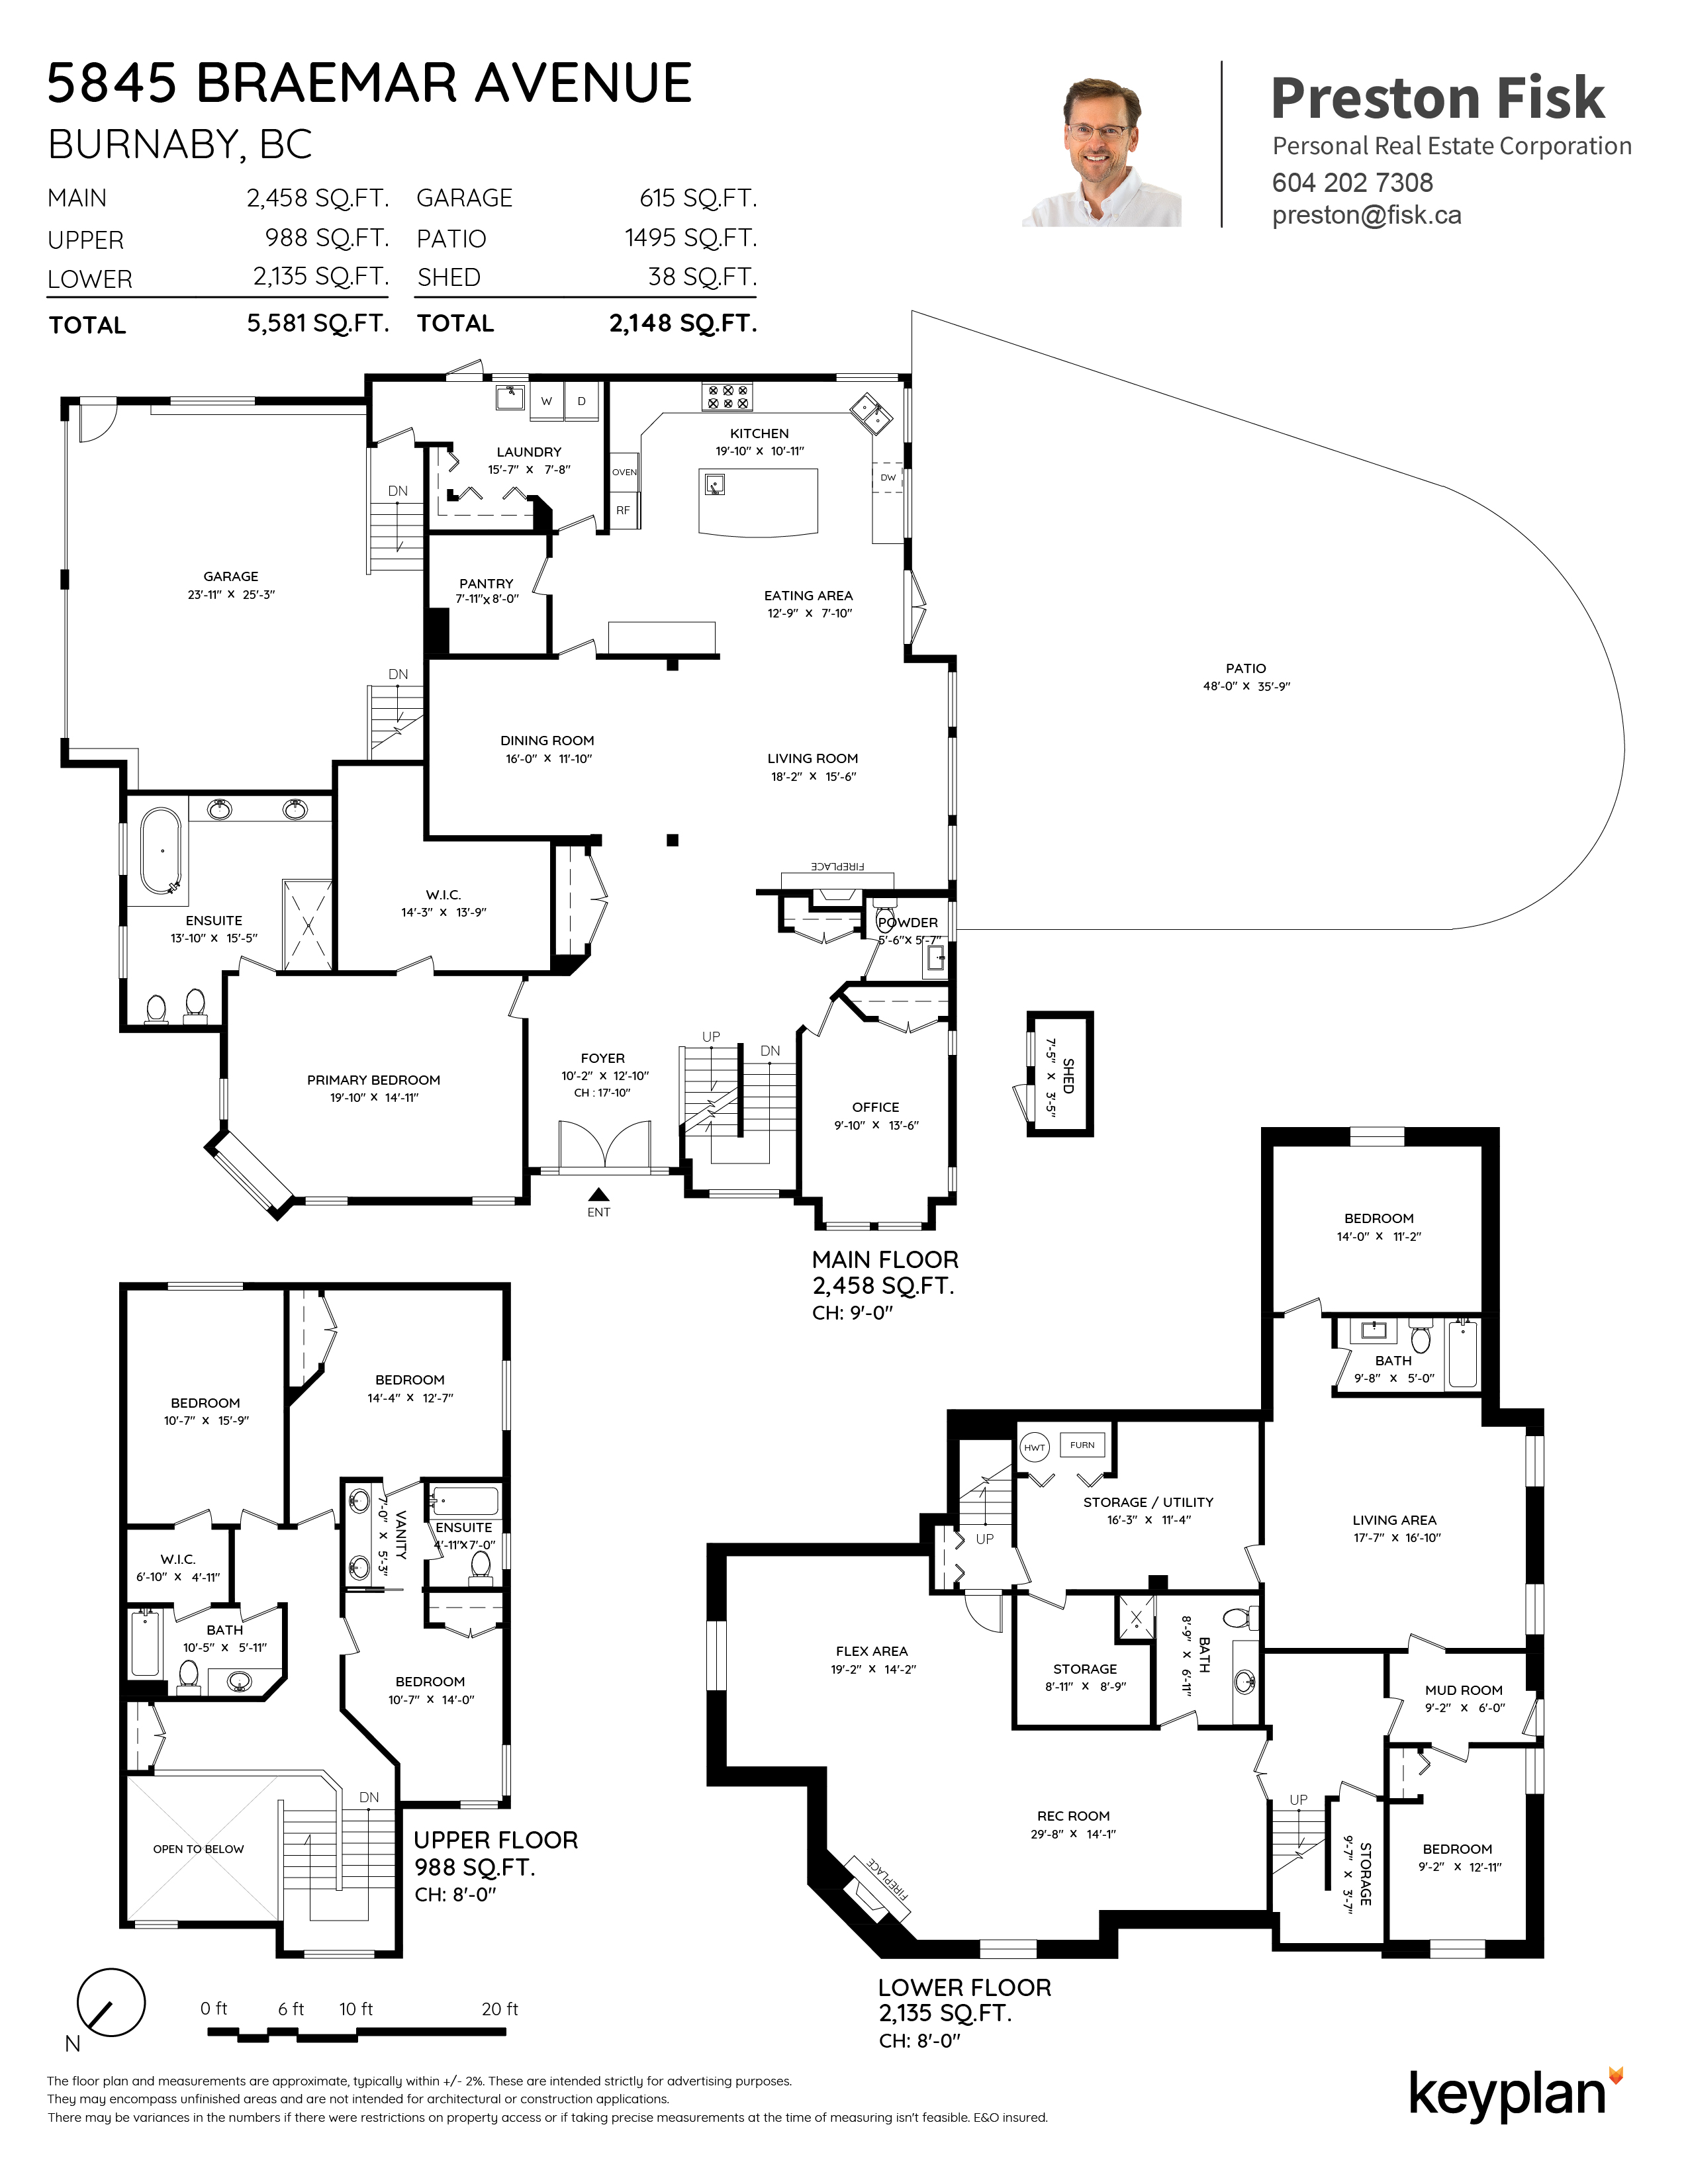 Preston Fisk - 5845 Braemar Avenue, Burnaby, BC, Canada | Floor Plan 1